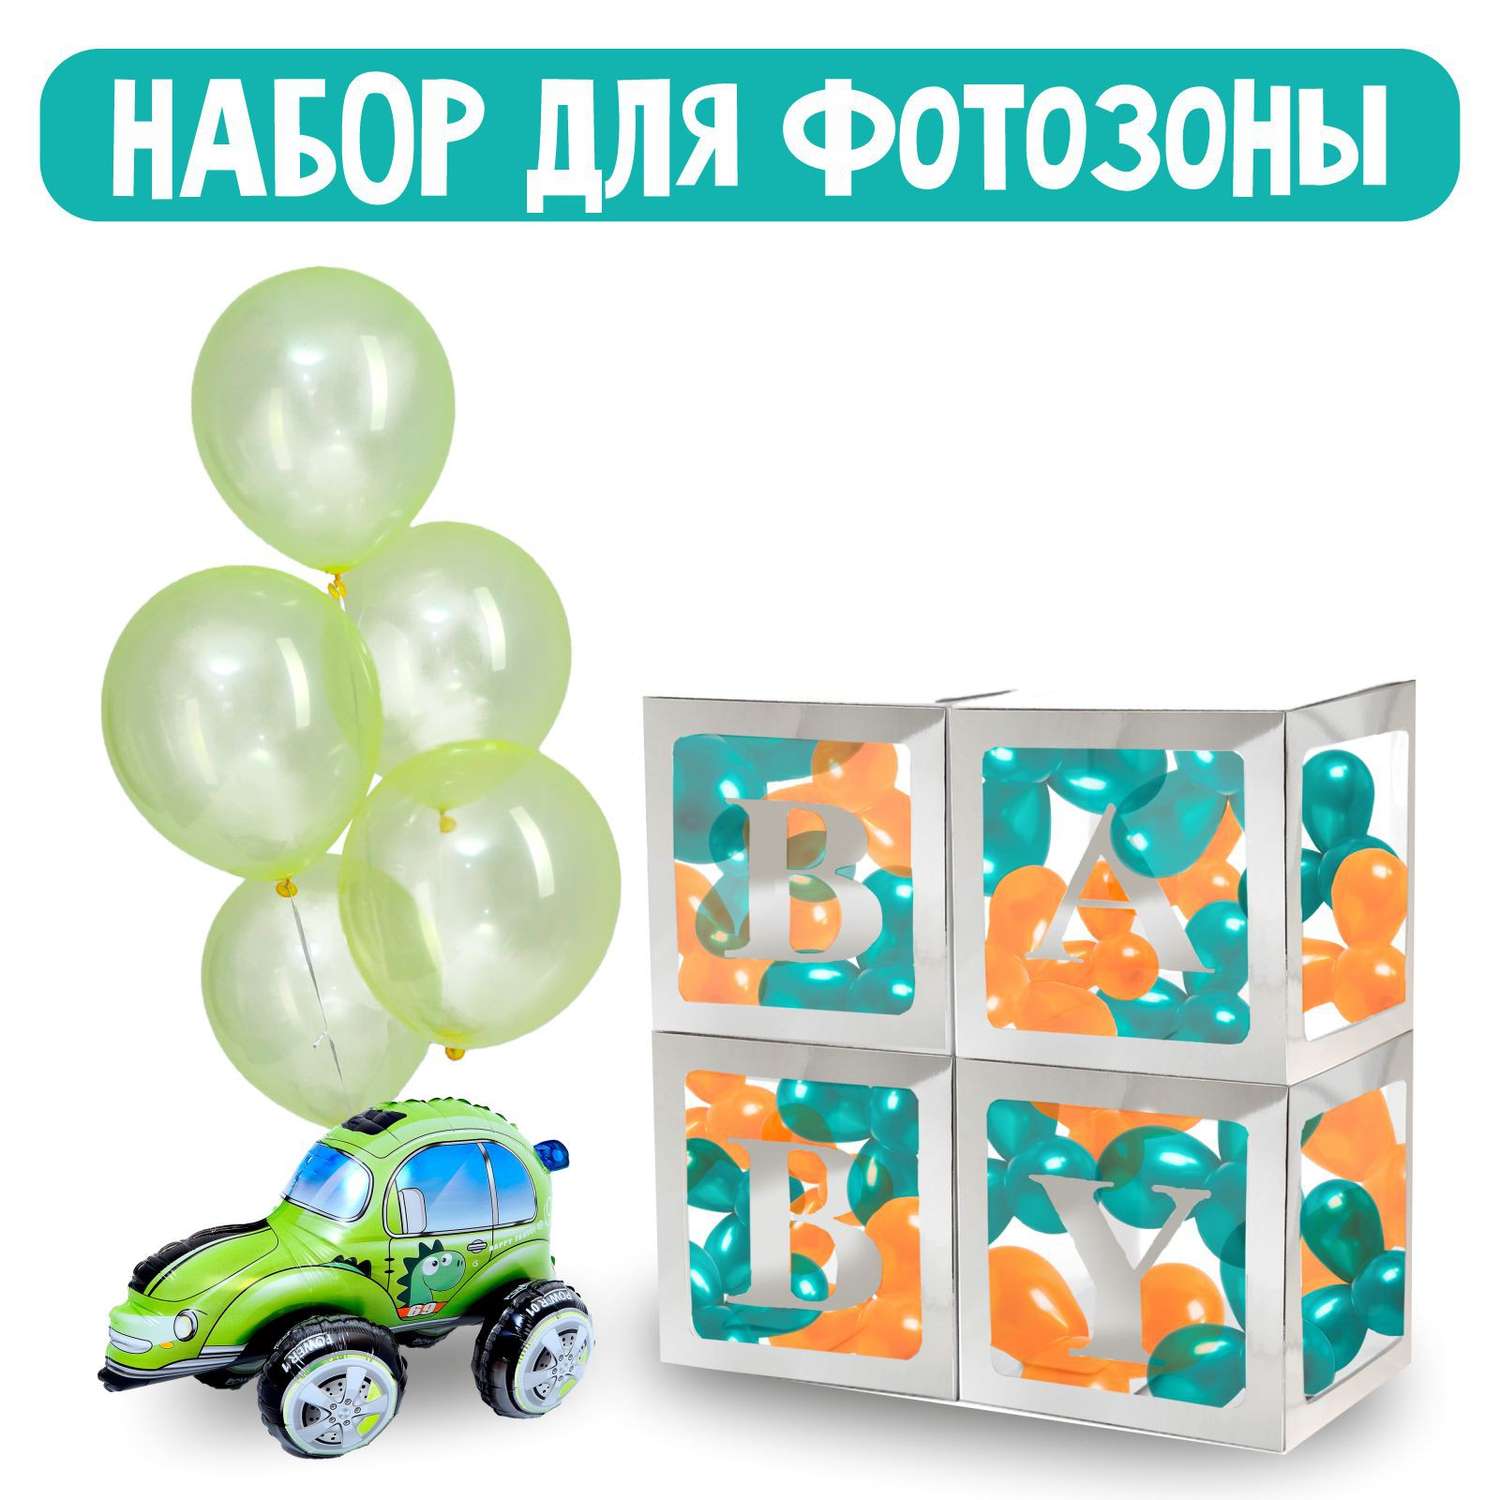 Букет Sima-Land из воздушных шаров «Фотозона для мальчика» набор 38 шт. фольга картон латекс - фото 1